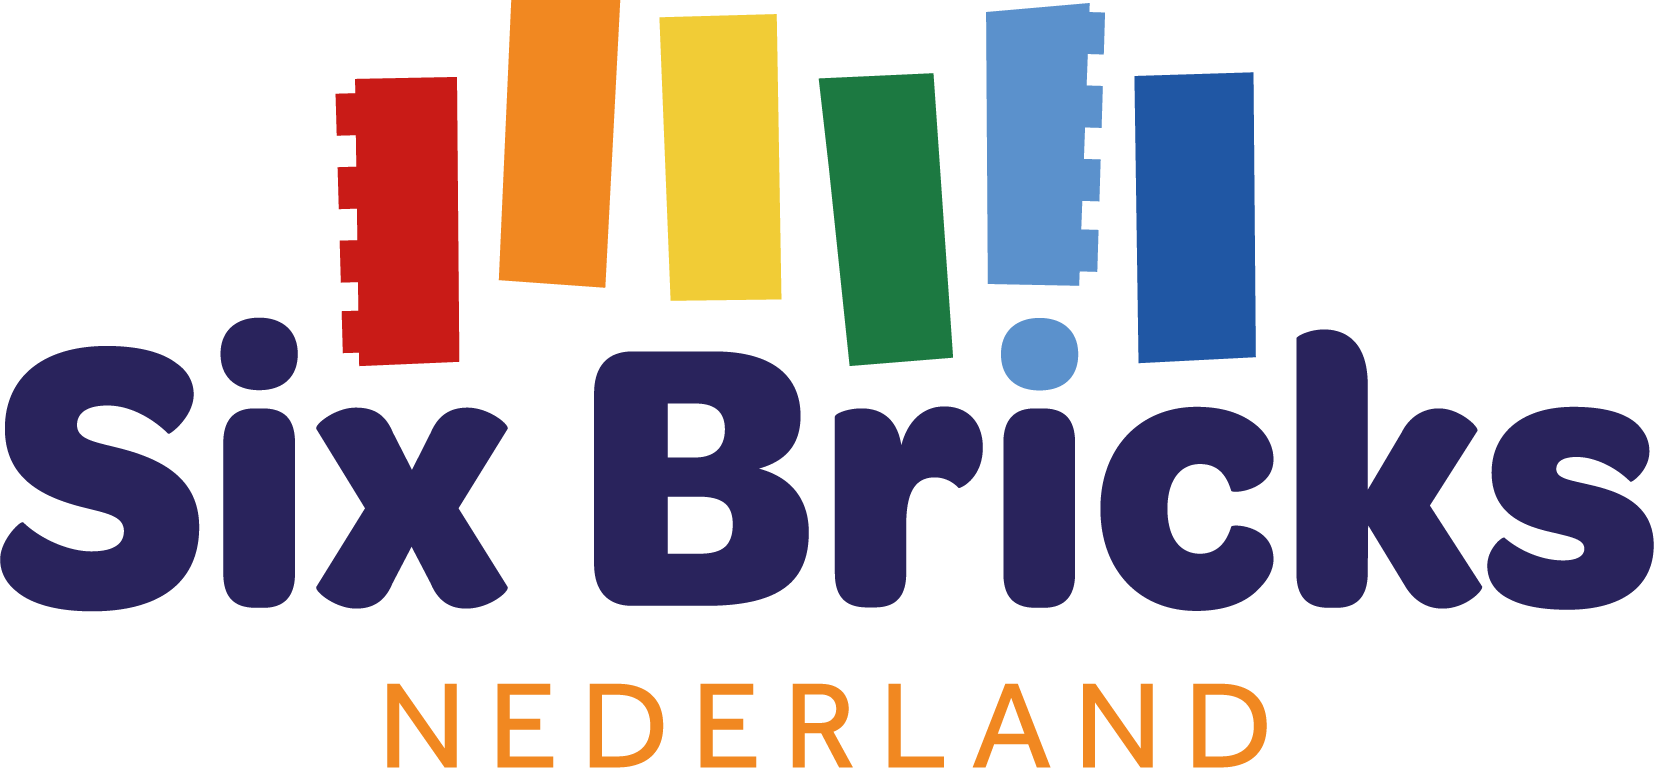 Six Bricks Nederland